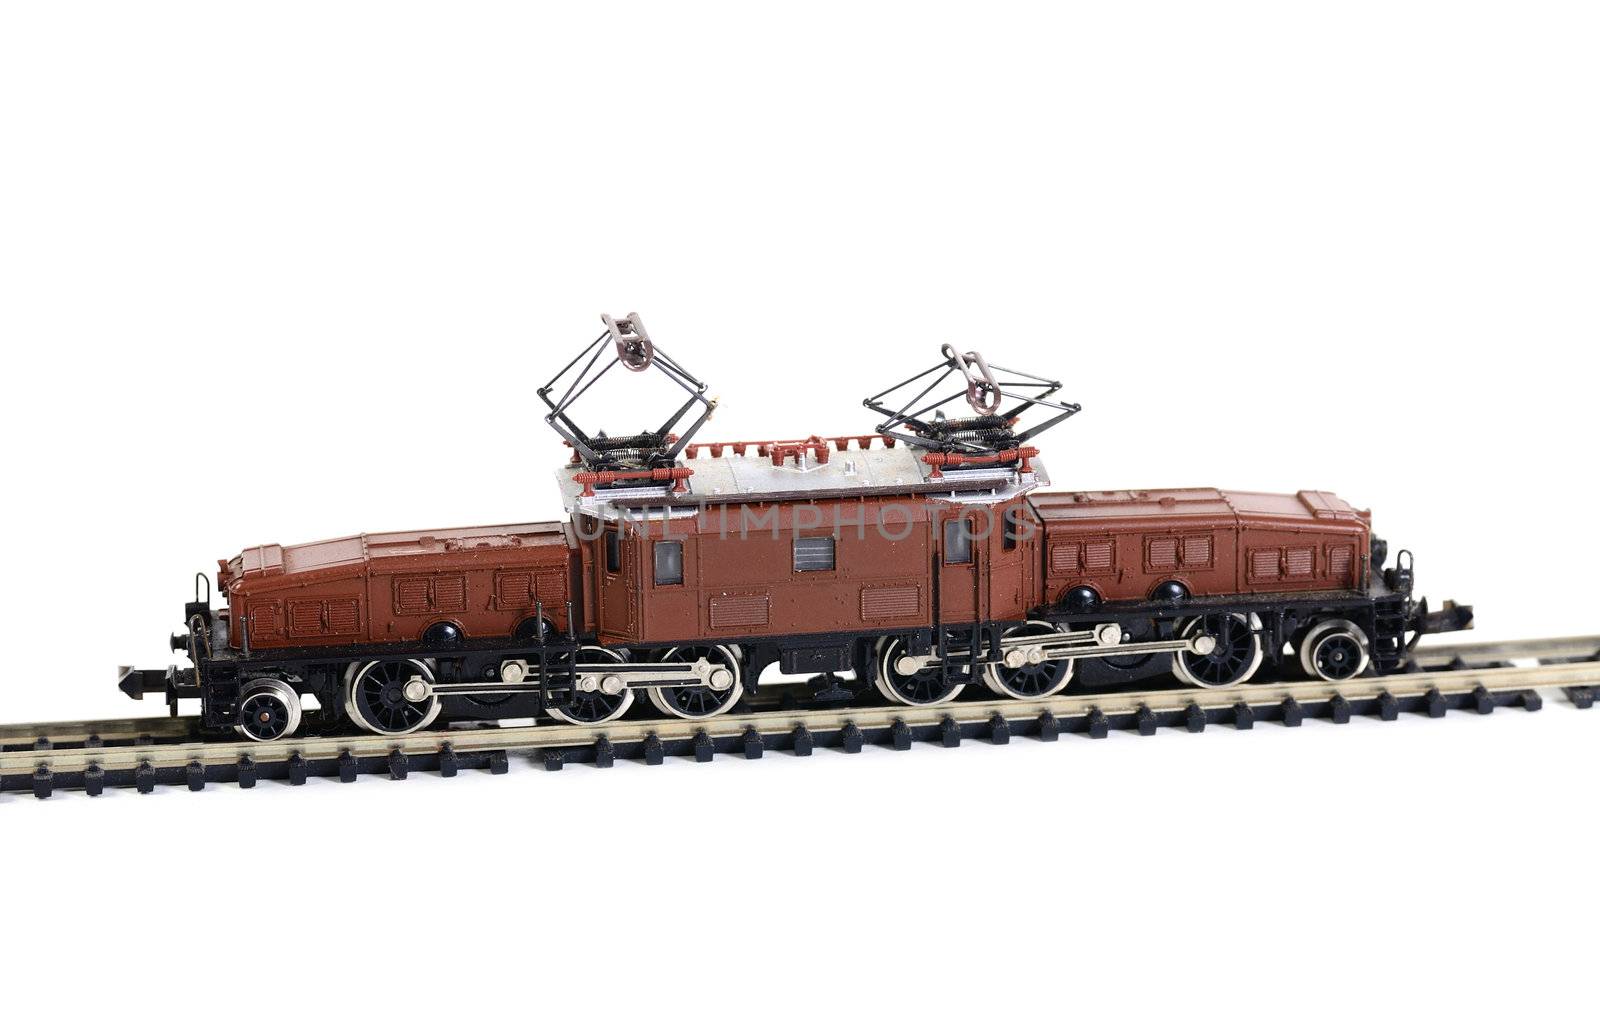 Shot of Model railroading isolated on white background